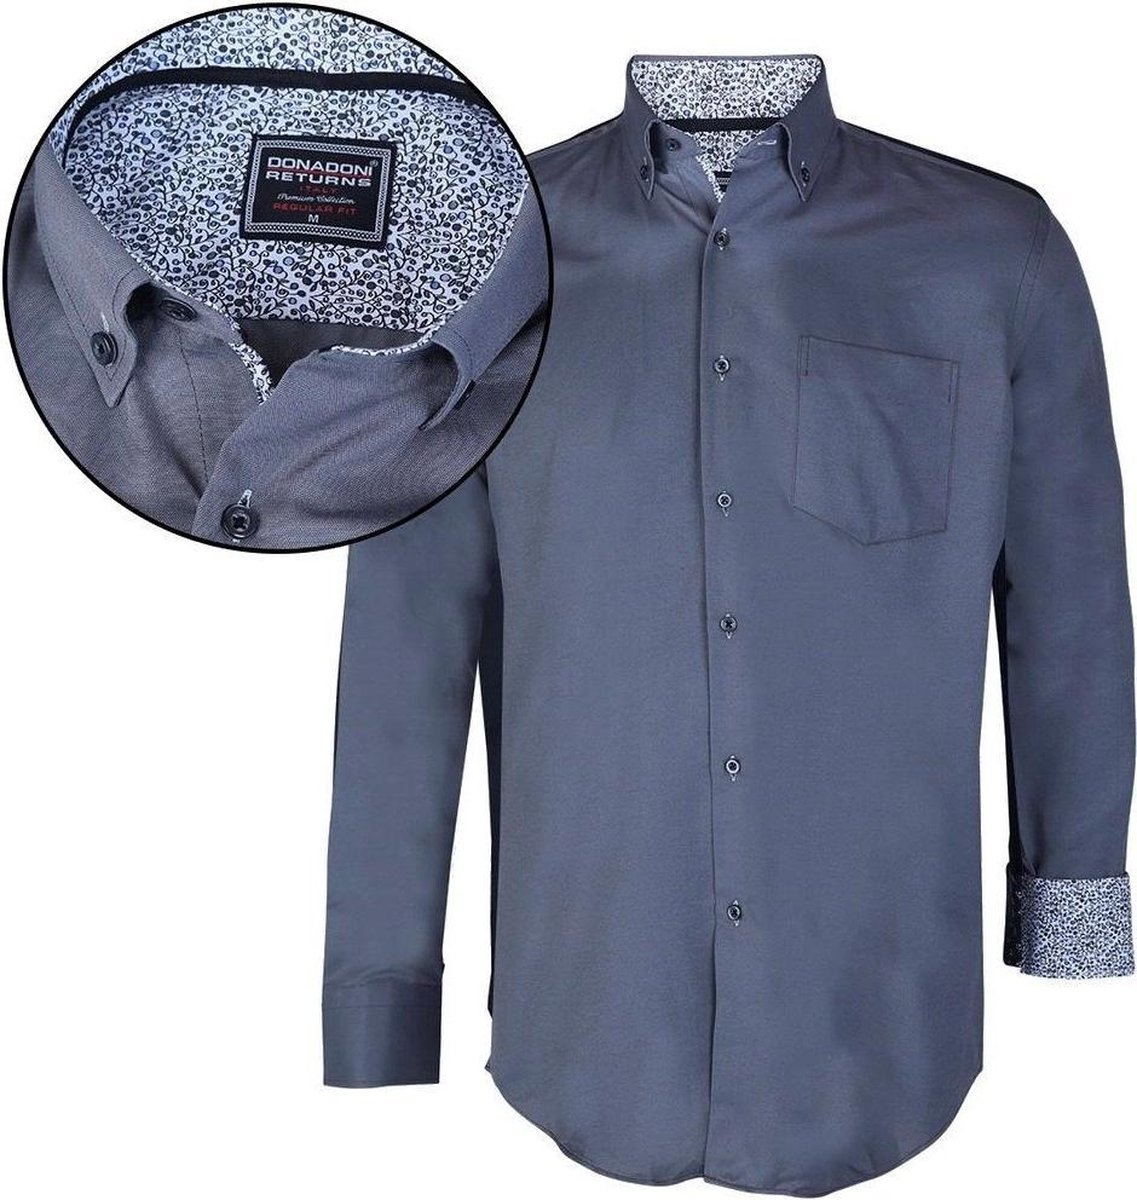 Donadoni - Heren Overhemd - Regular Fit - Grijs